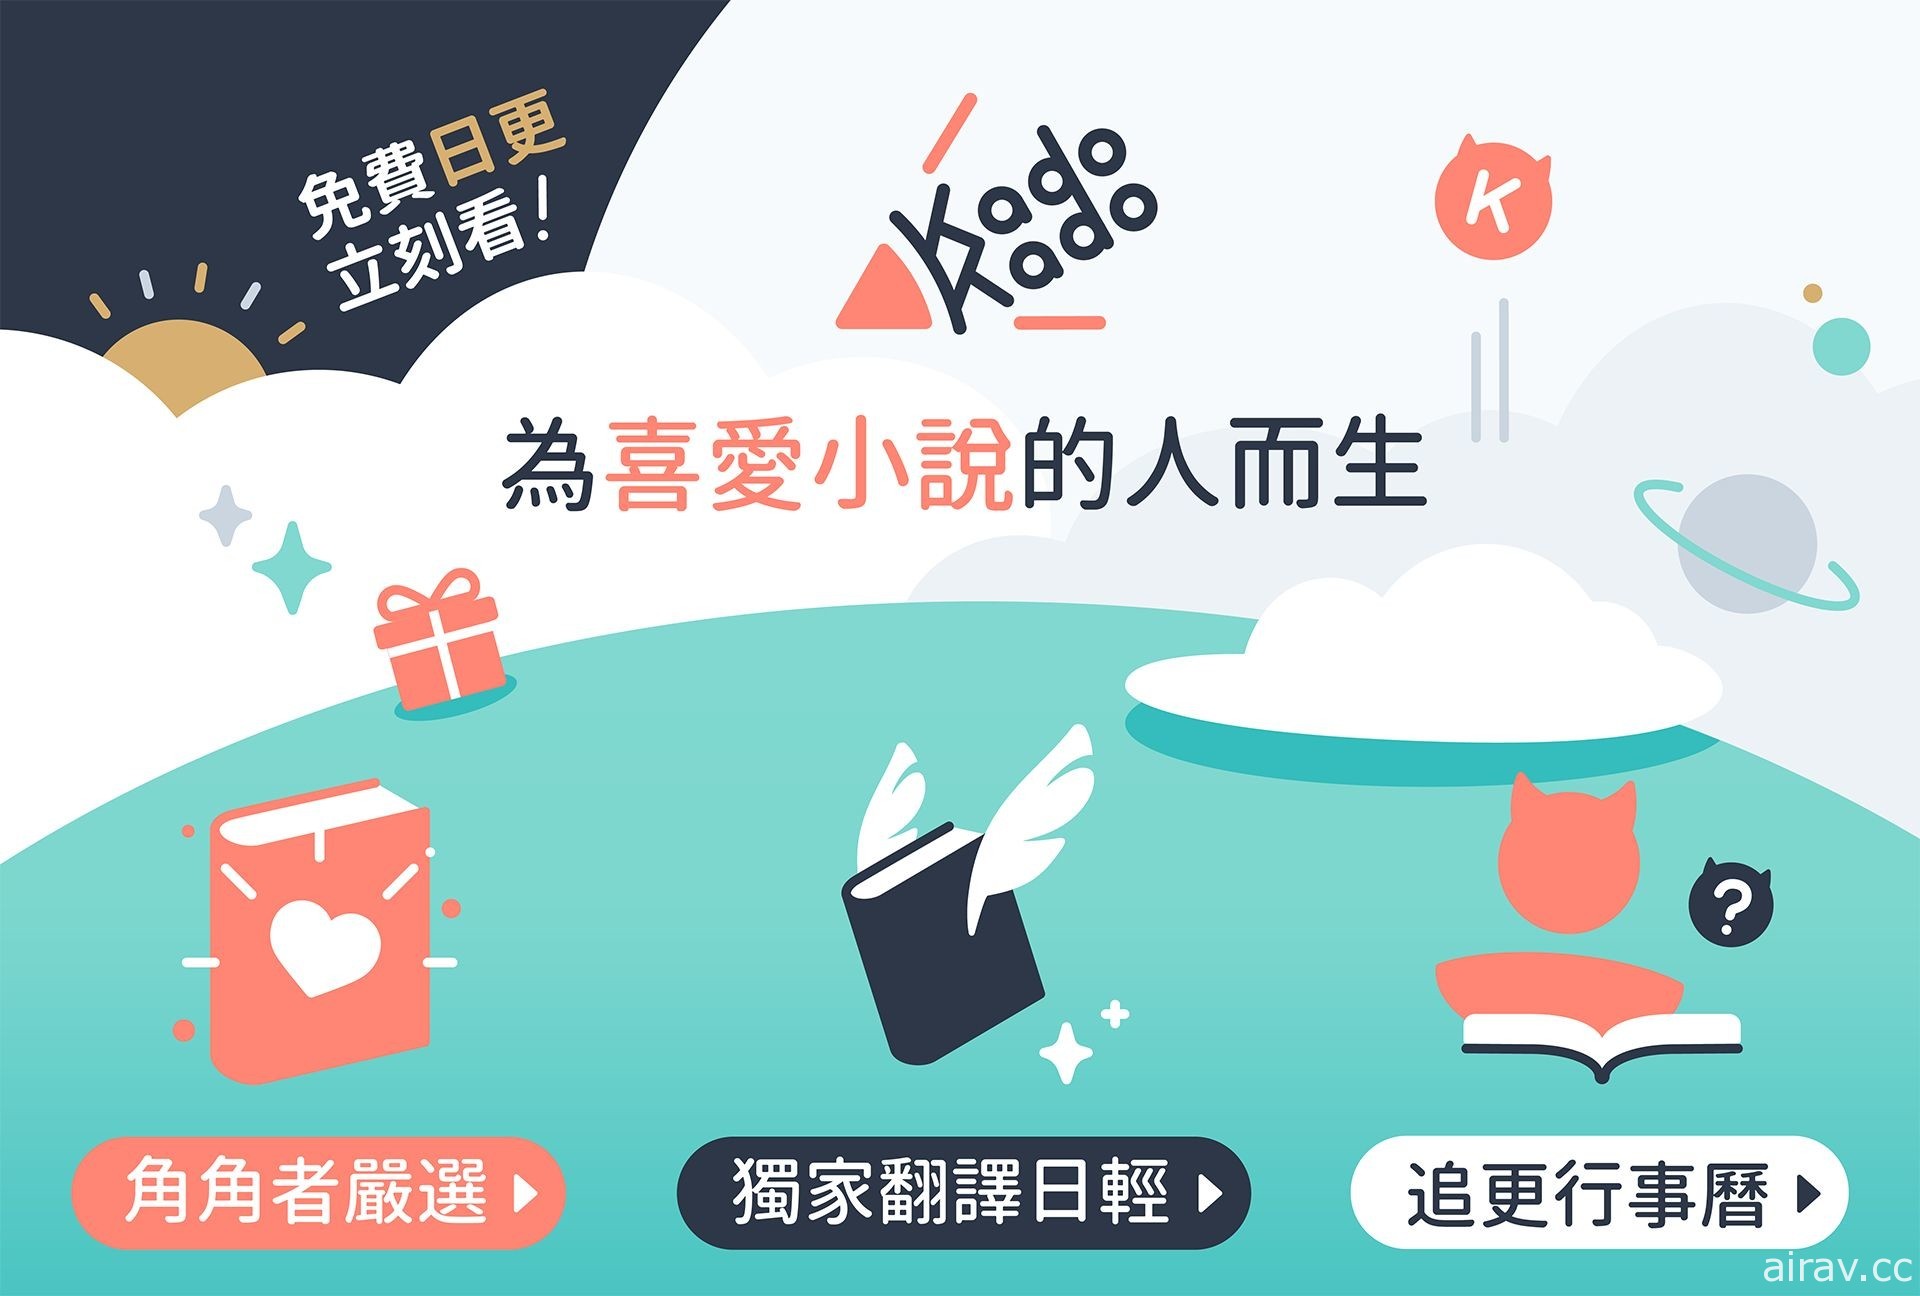 台灣角川宣布推出小說連載平台「KadoKado 角角者」匯集台日眾多作品